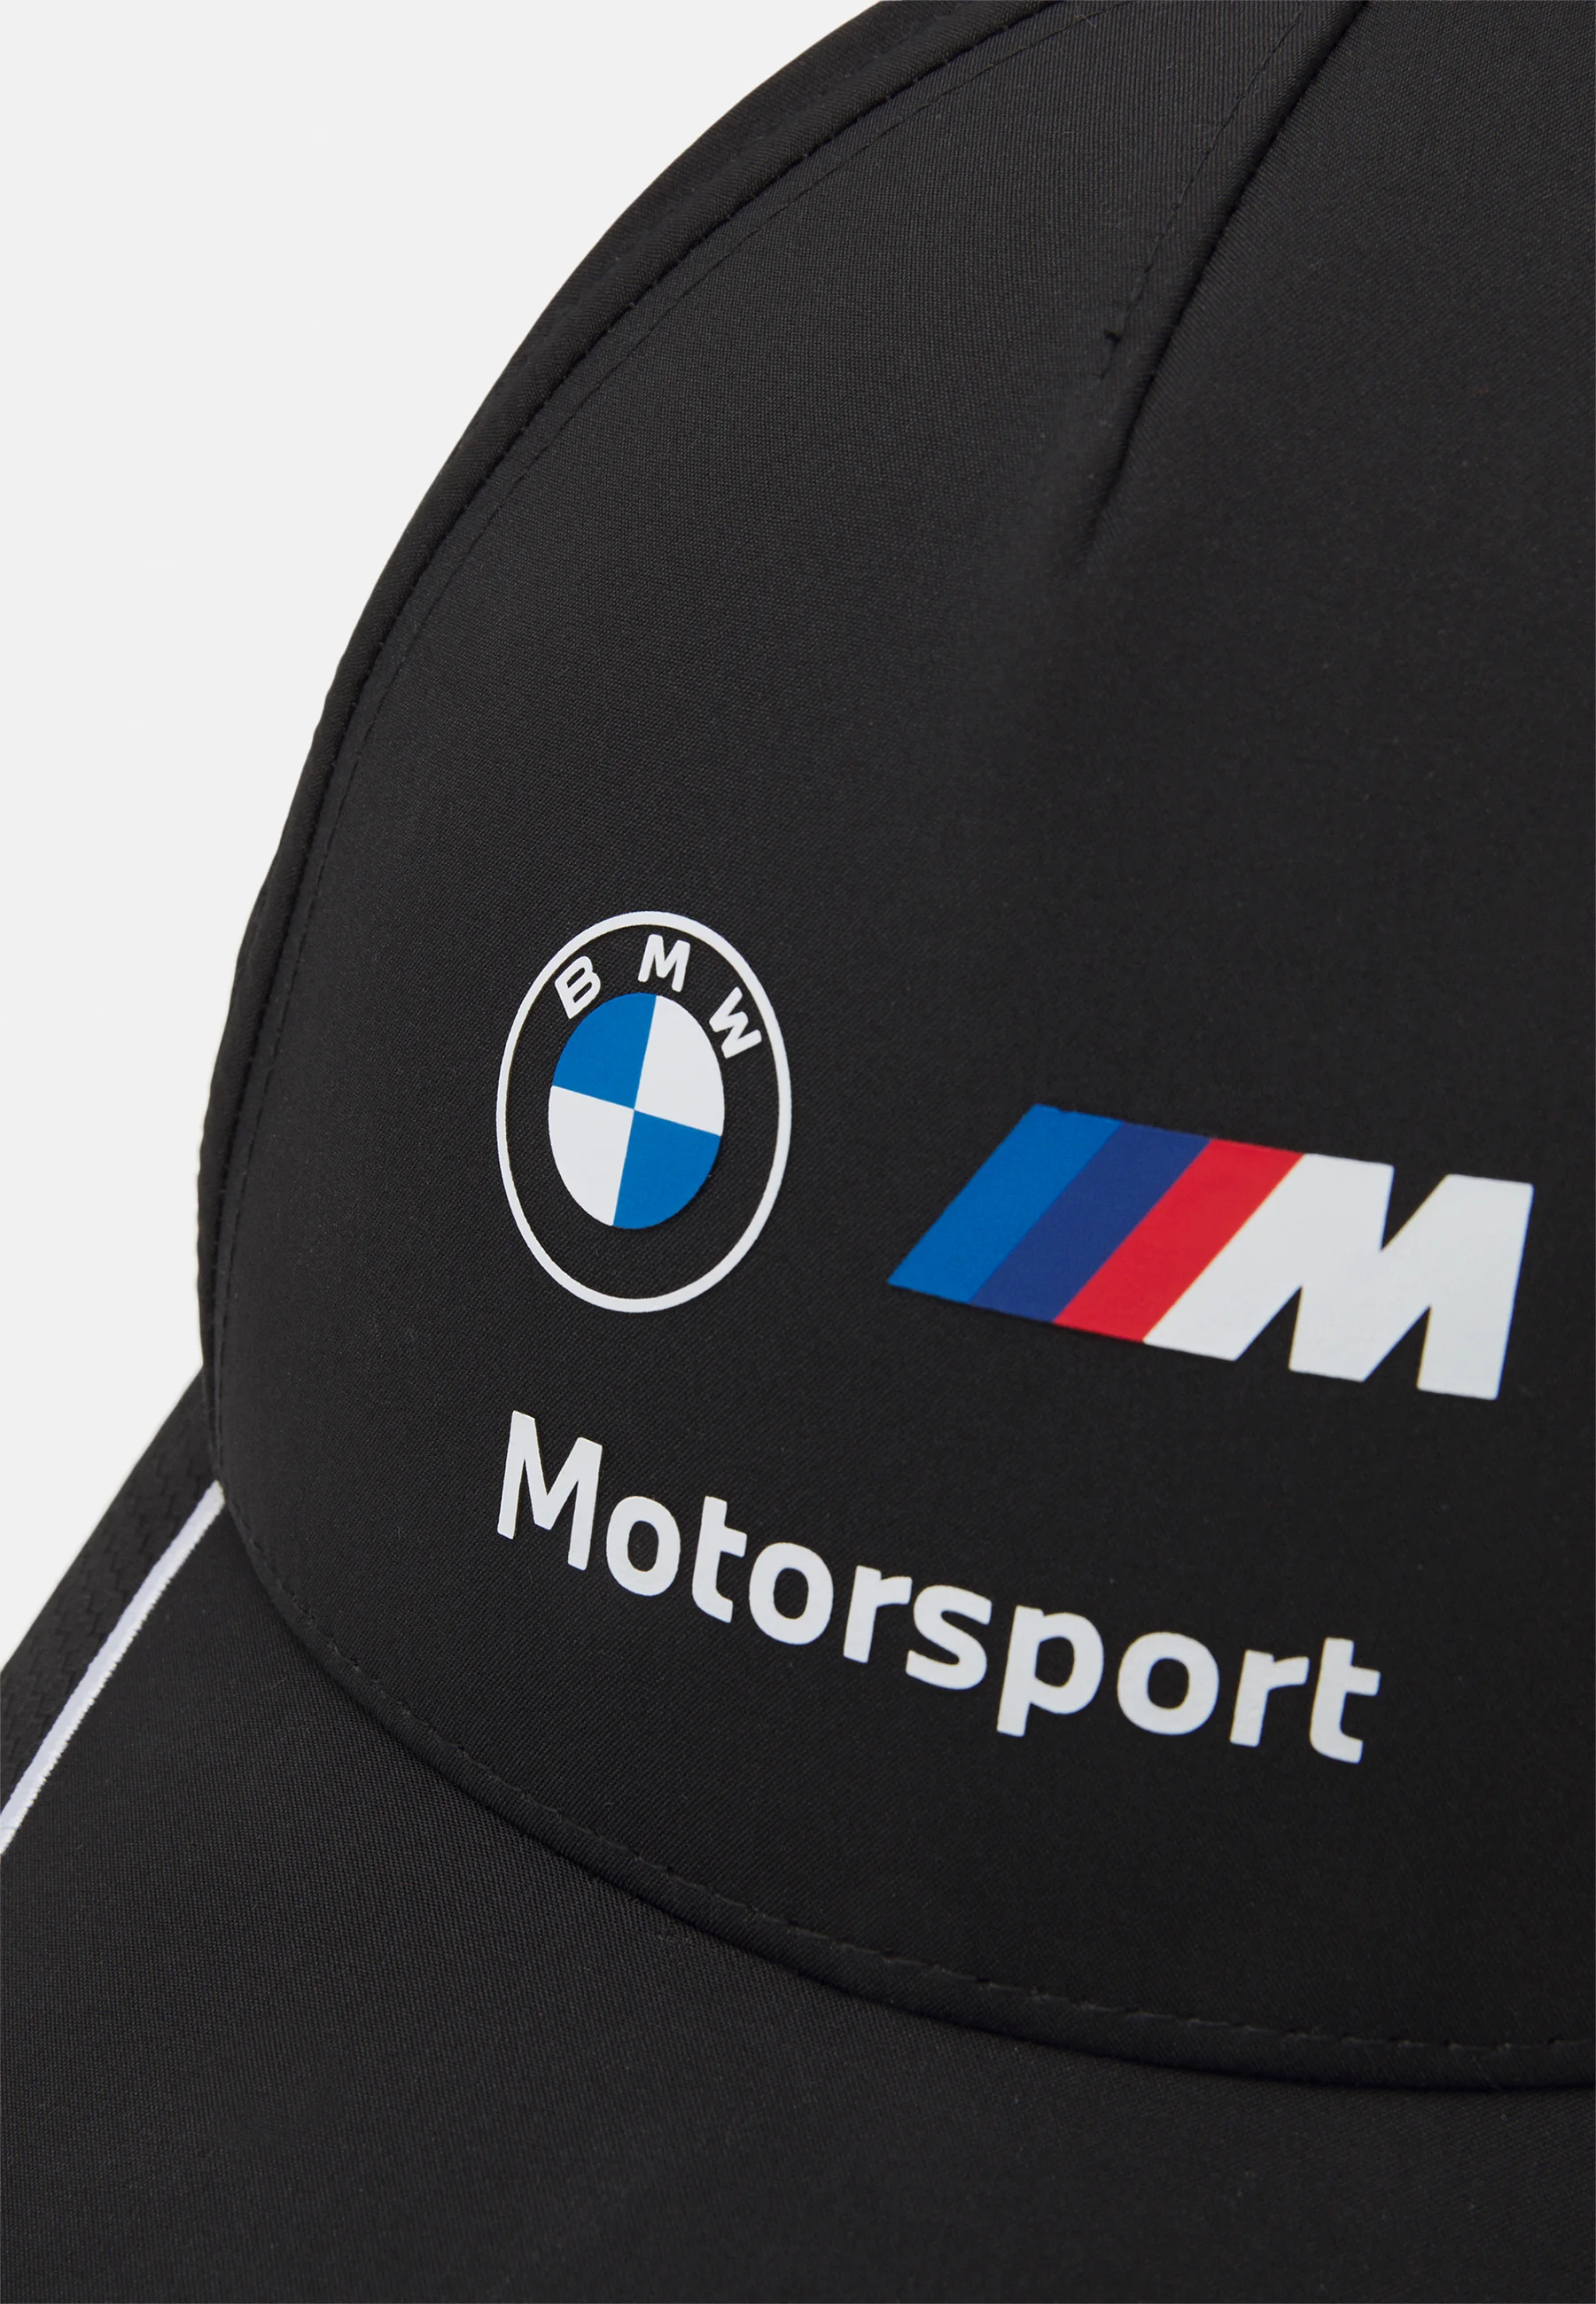 GORRA BMW MOTORSPORT black